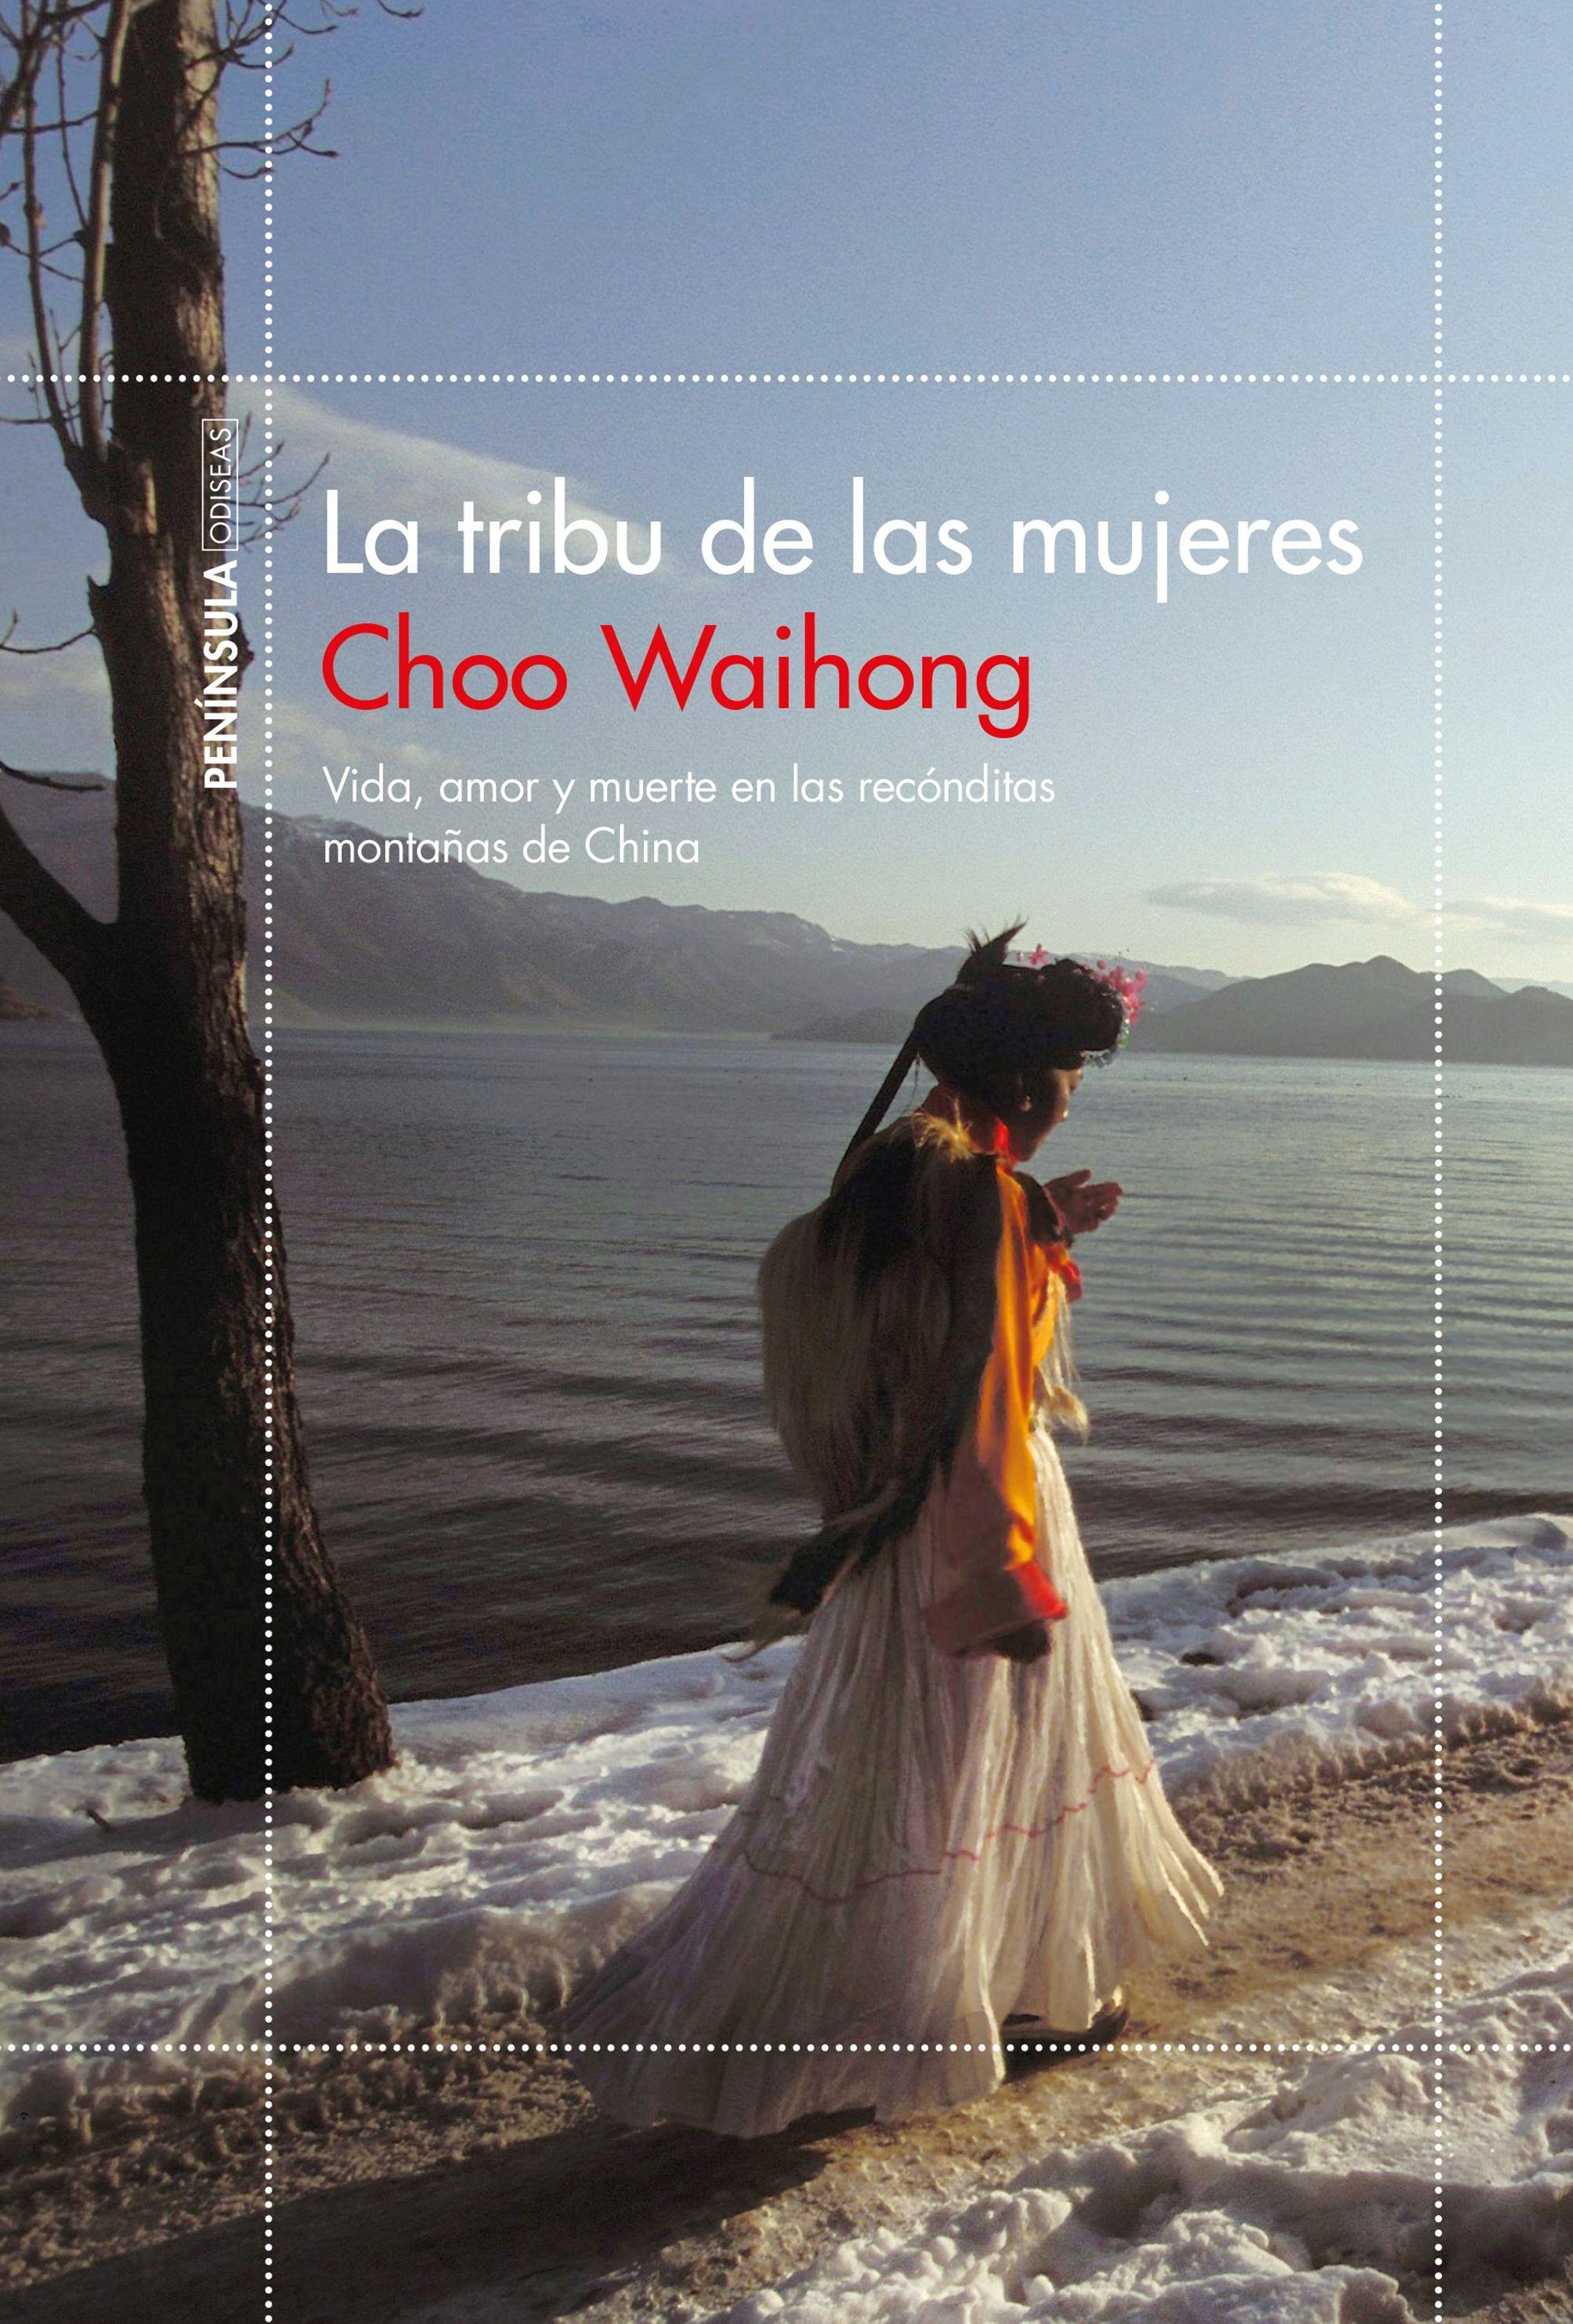 La Tribu de las Mujeres "Vida, Amor y Muerte en las Recónditas Montañas de China"